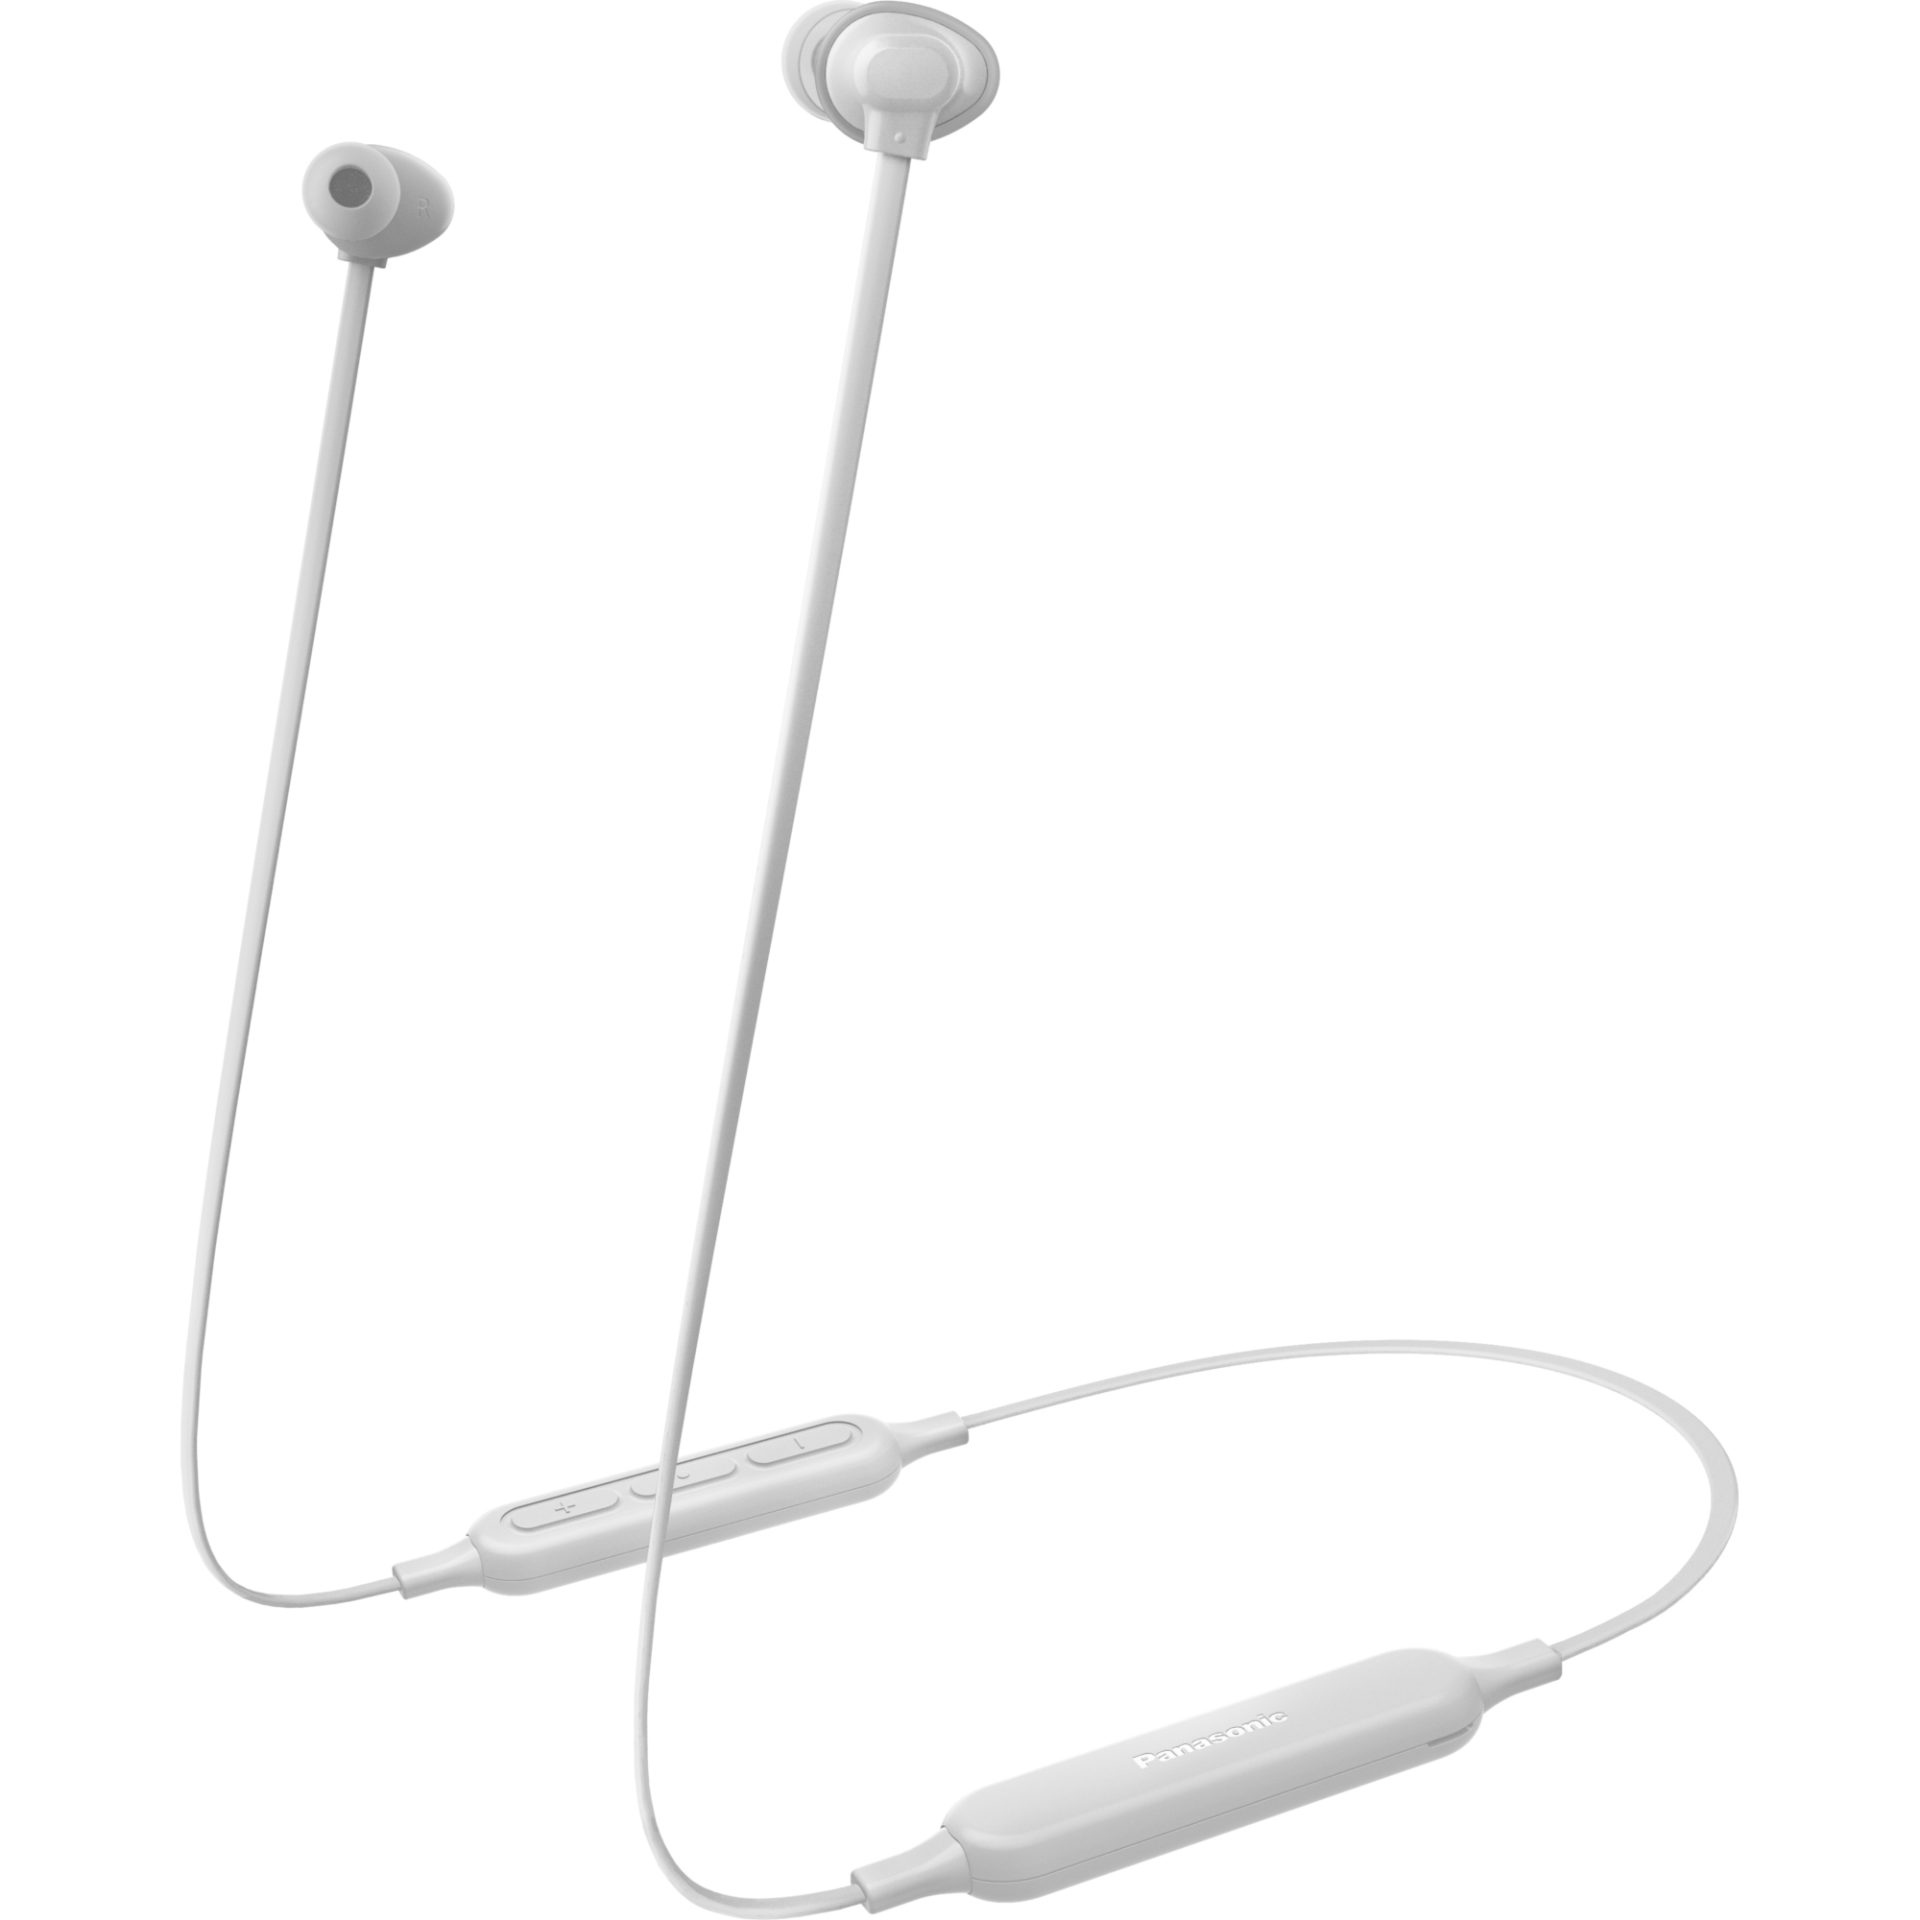 Panasonic RZ-NJ320 bezdrátová sluchátka Bluetooth do uší (ERGOFIT PLUS, Extra Bass System, rychlé nabíjení, 18h přehrávání, plochý kabel), bílá